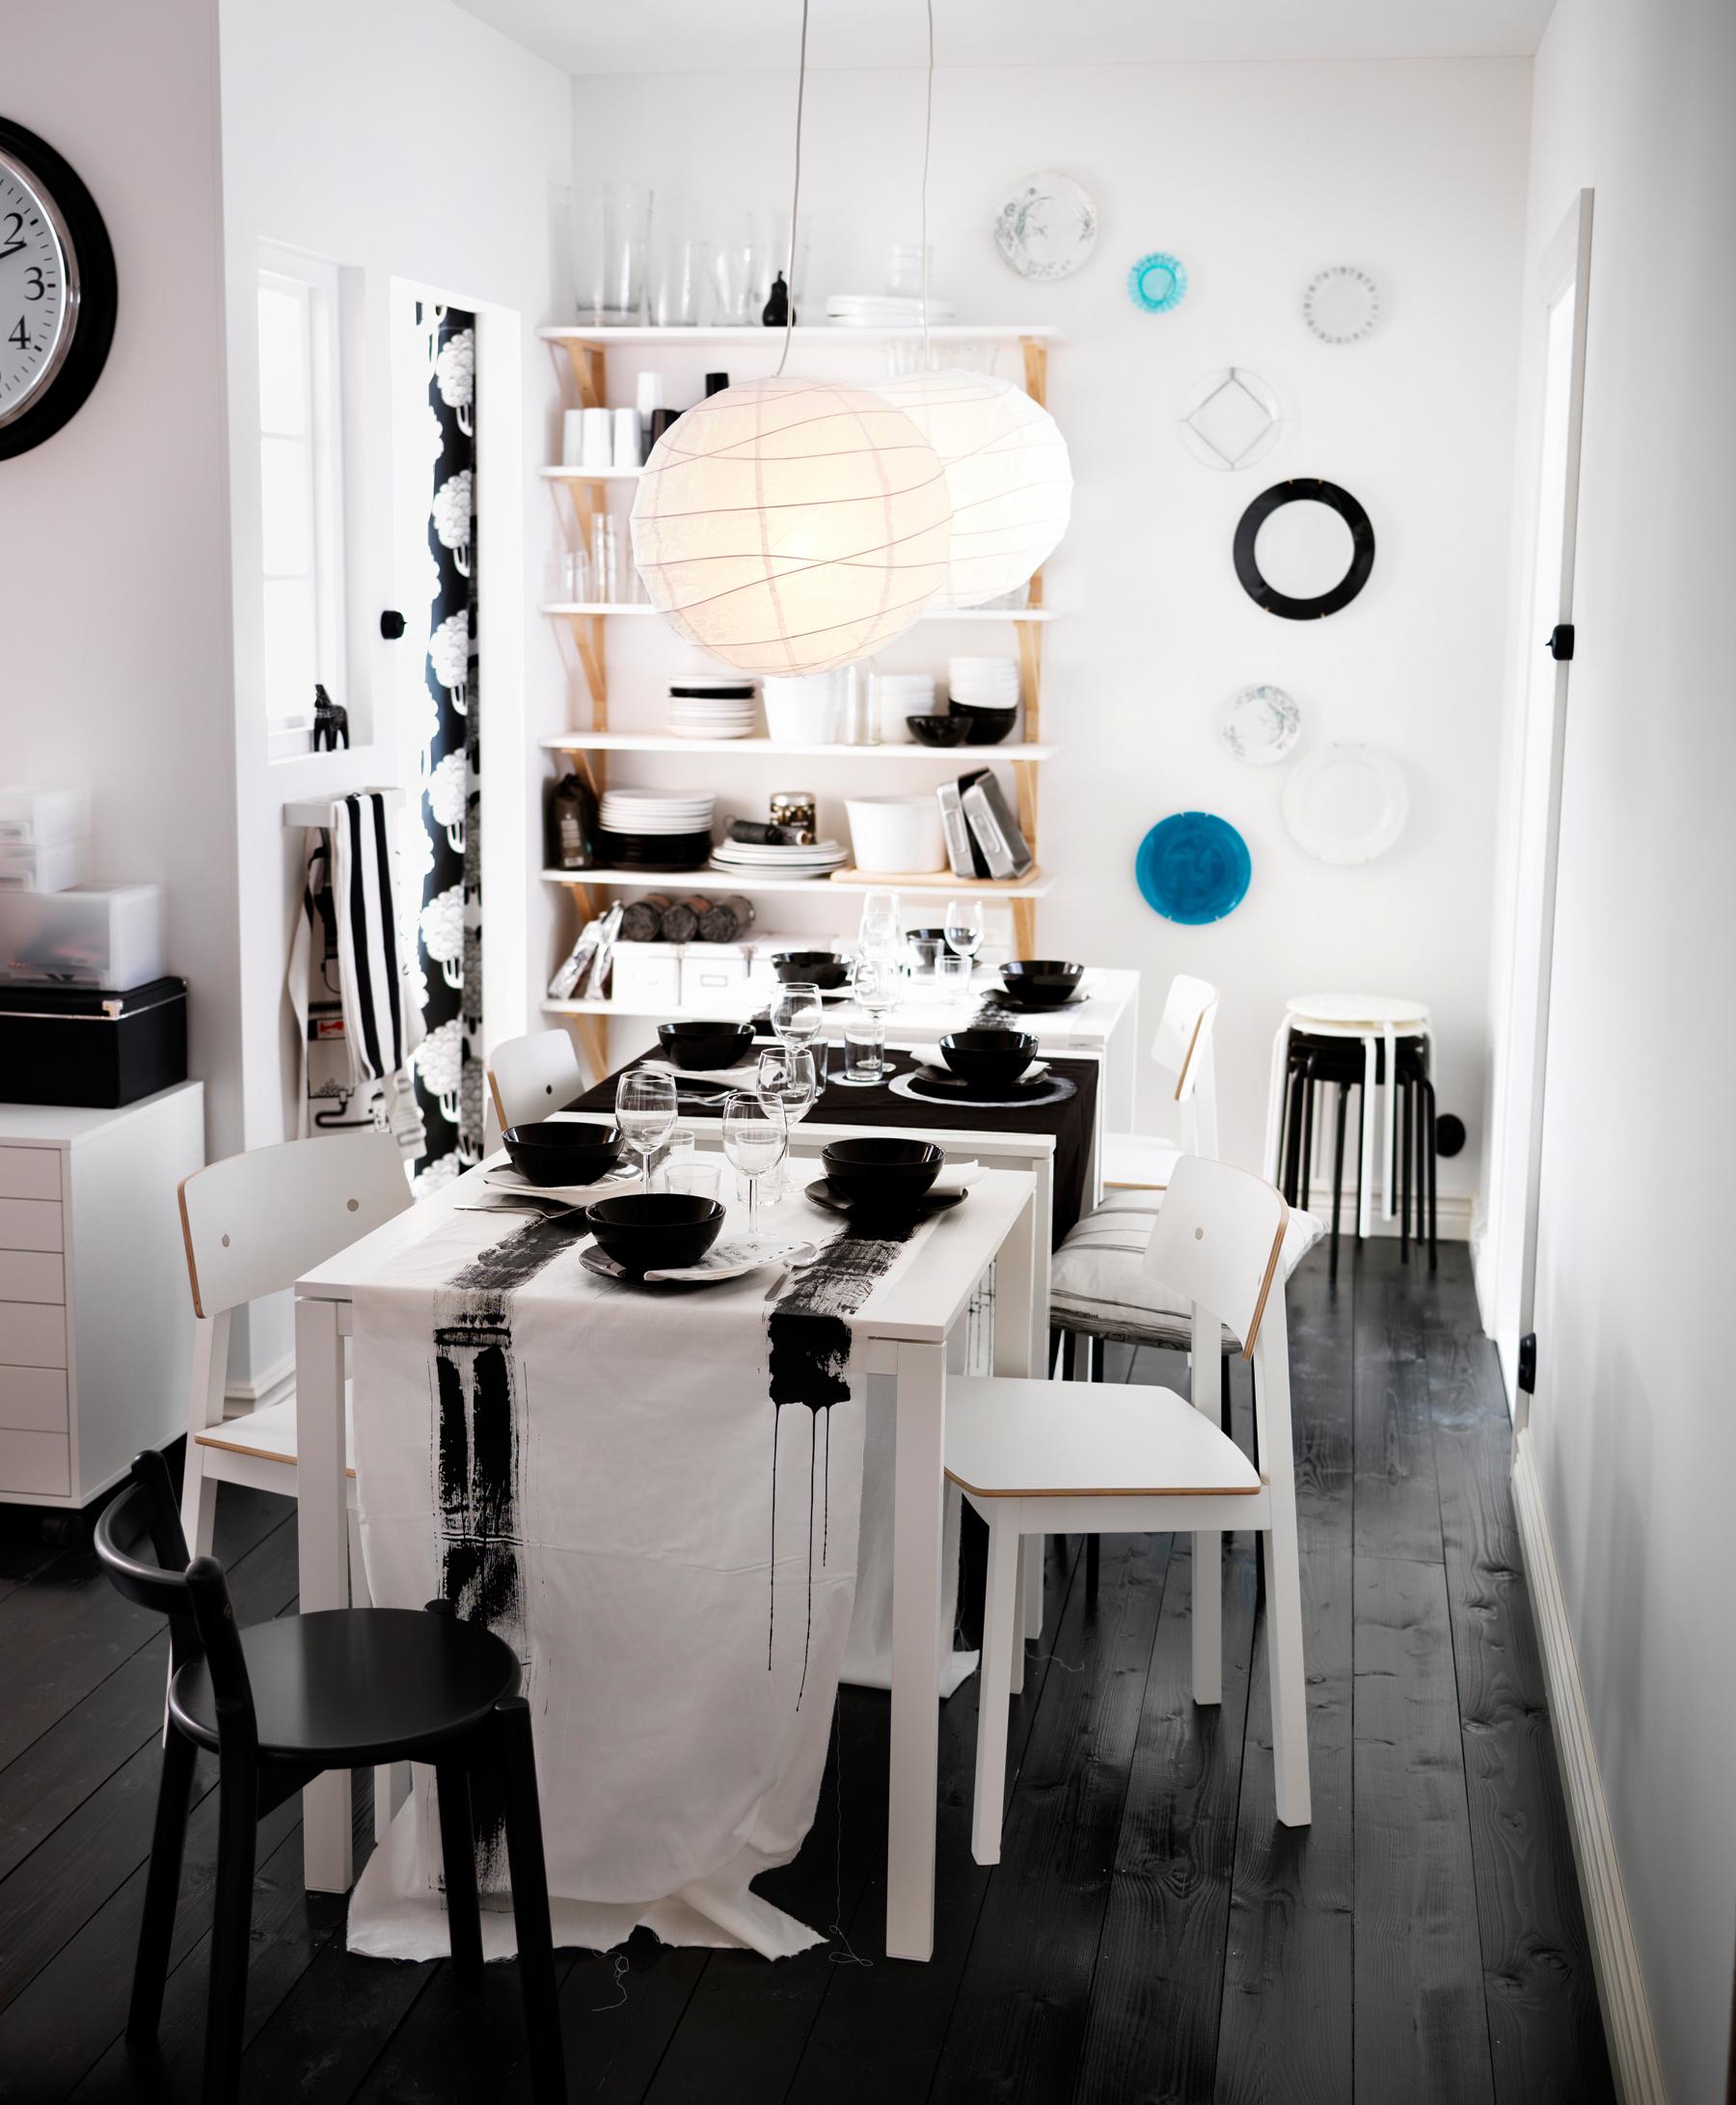 Esstisch und Deko in Schwarz-Weiß #wandgestaltung #geschirr #ikea #holzstuhl #wanddeko ©Inter IKEA Systems B.V